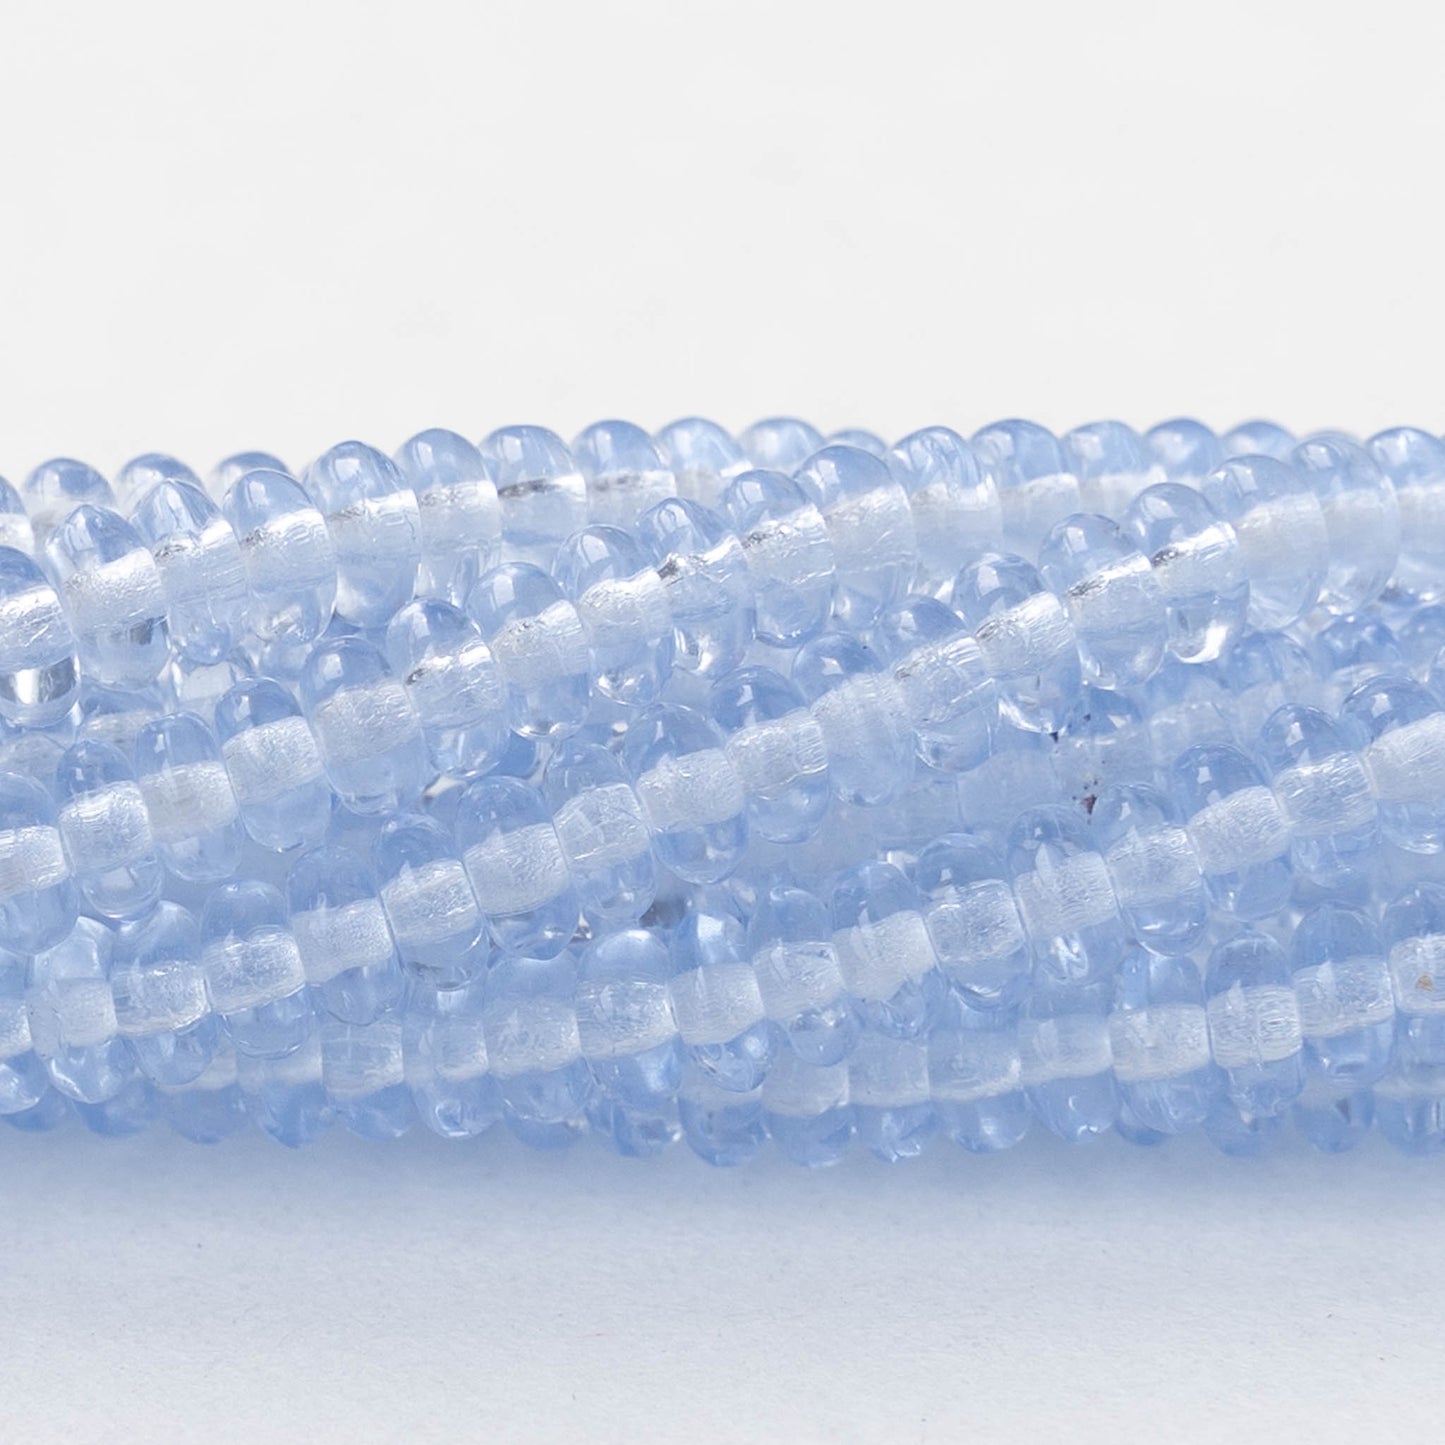 4mm Rondelle Beads - Light Sky Blue - 100 Beads